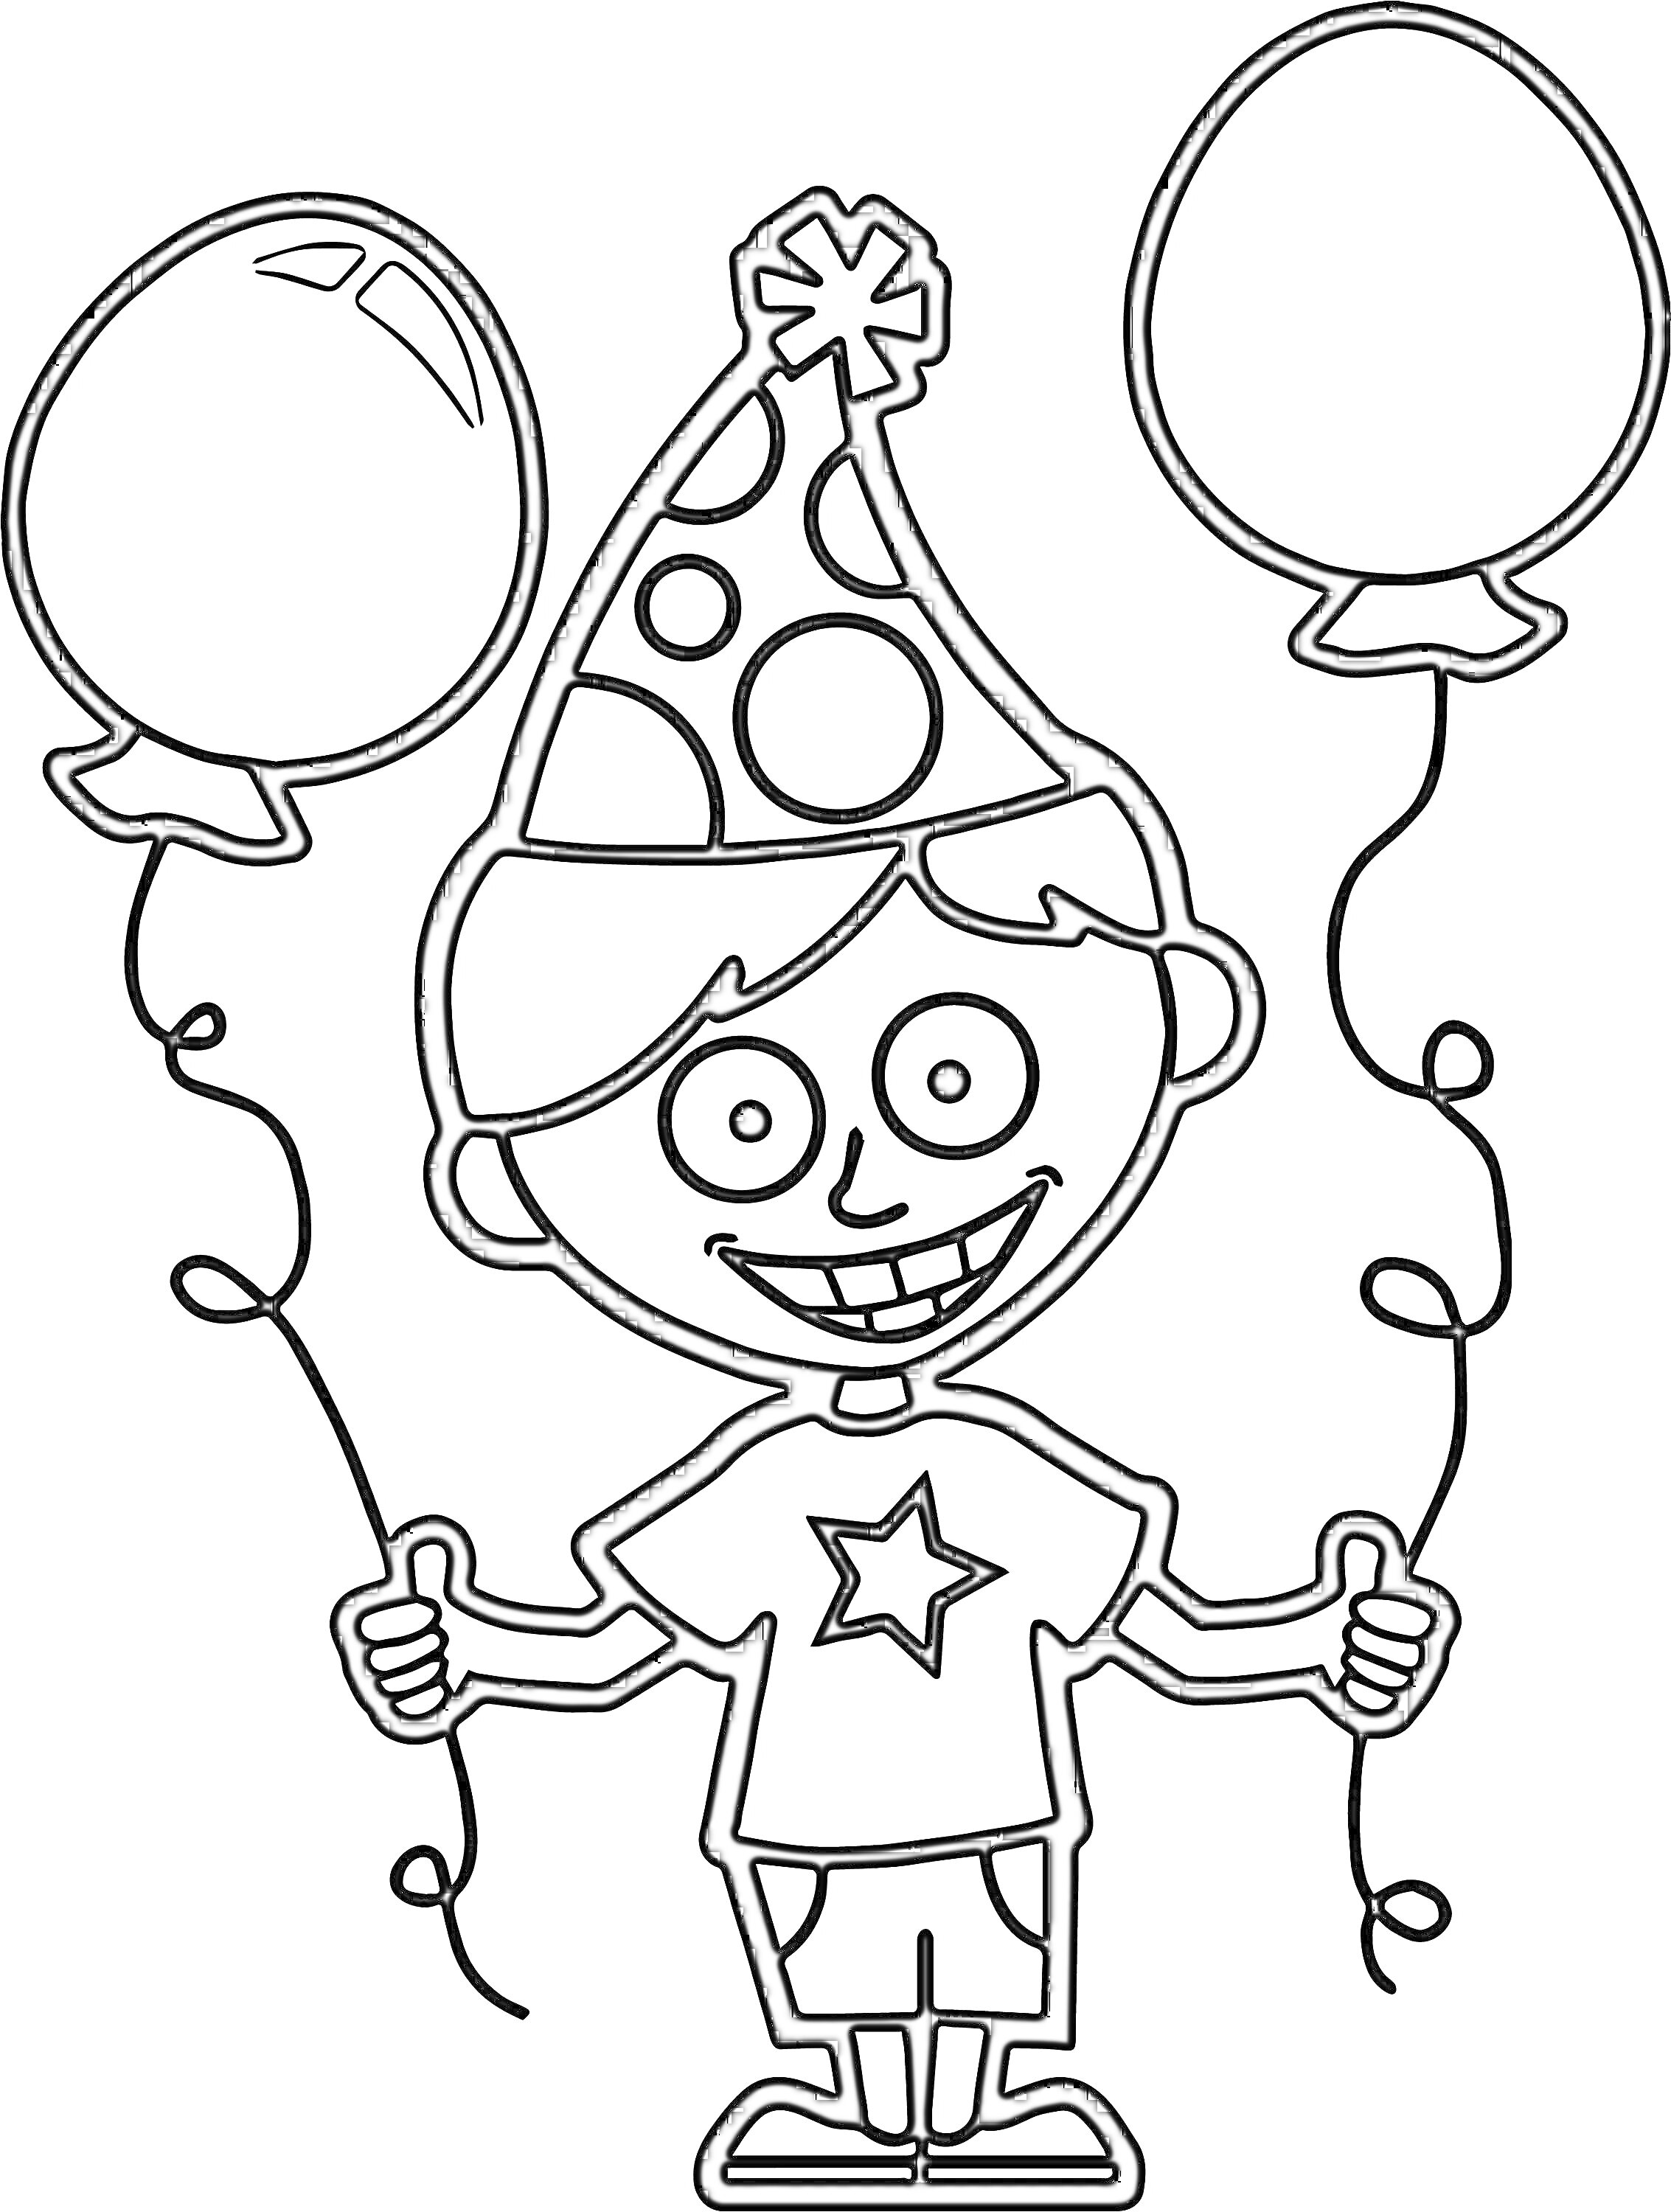 Раскраска Мальчик с шарами, в праздничной шапочке с узорами, в футболке с звездой, и шариками в обеих руках